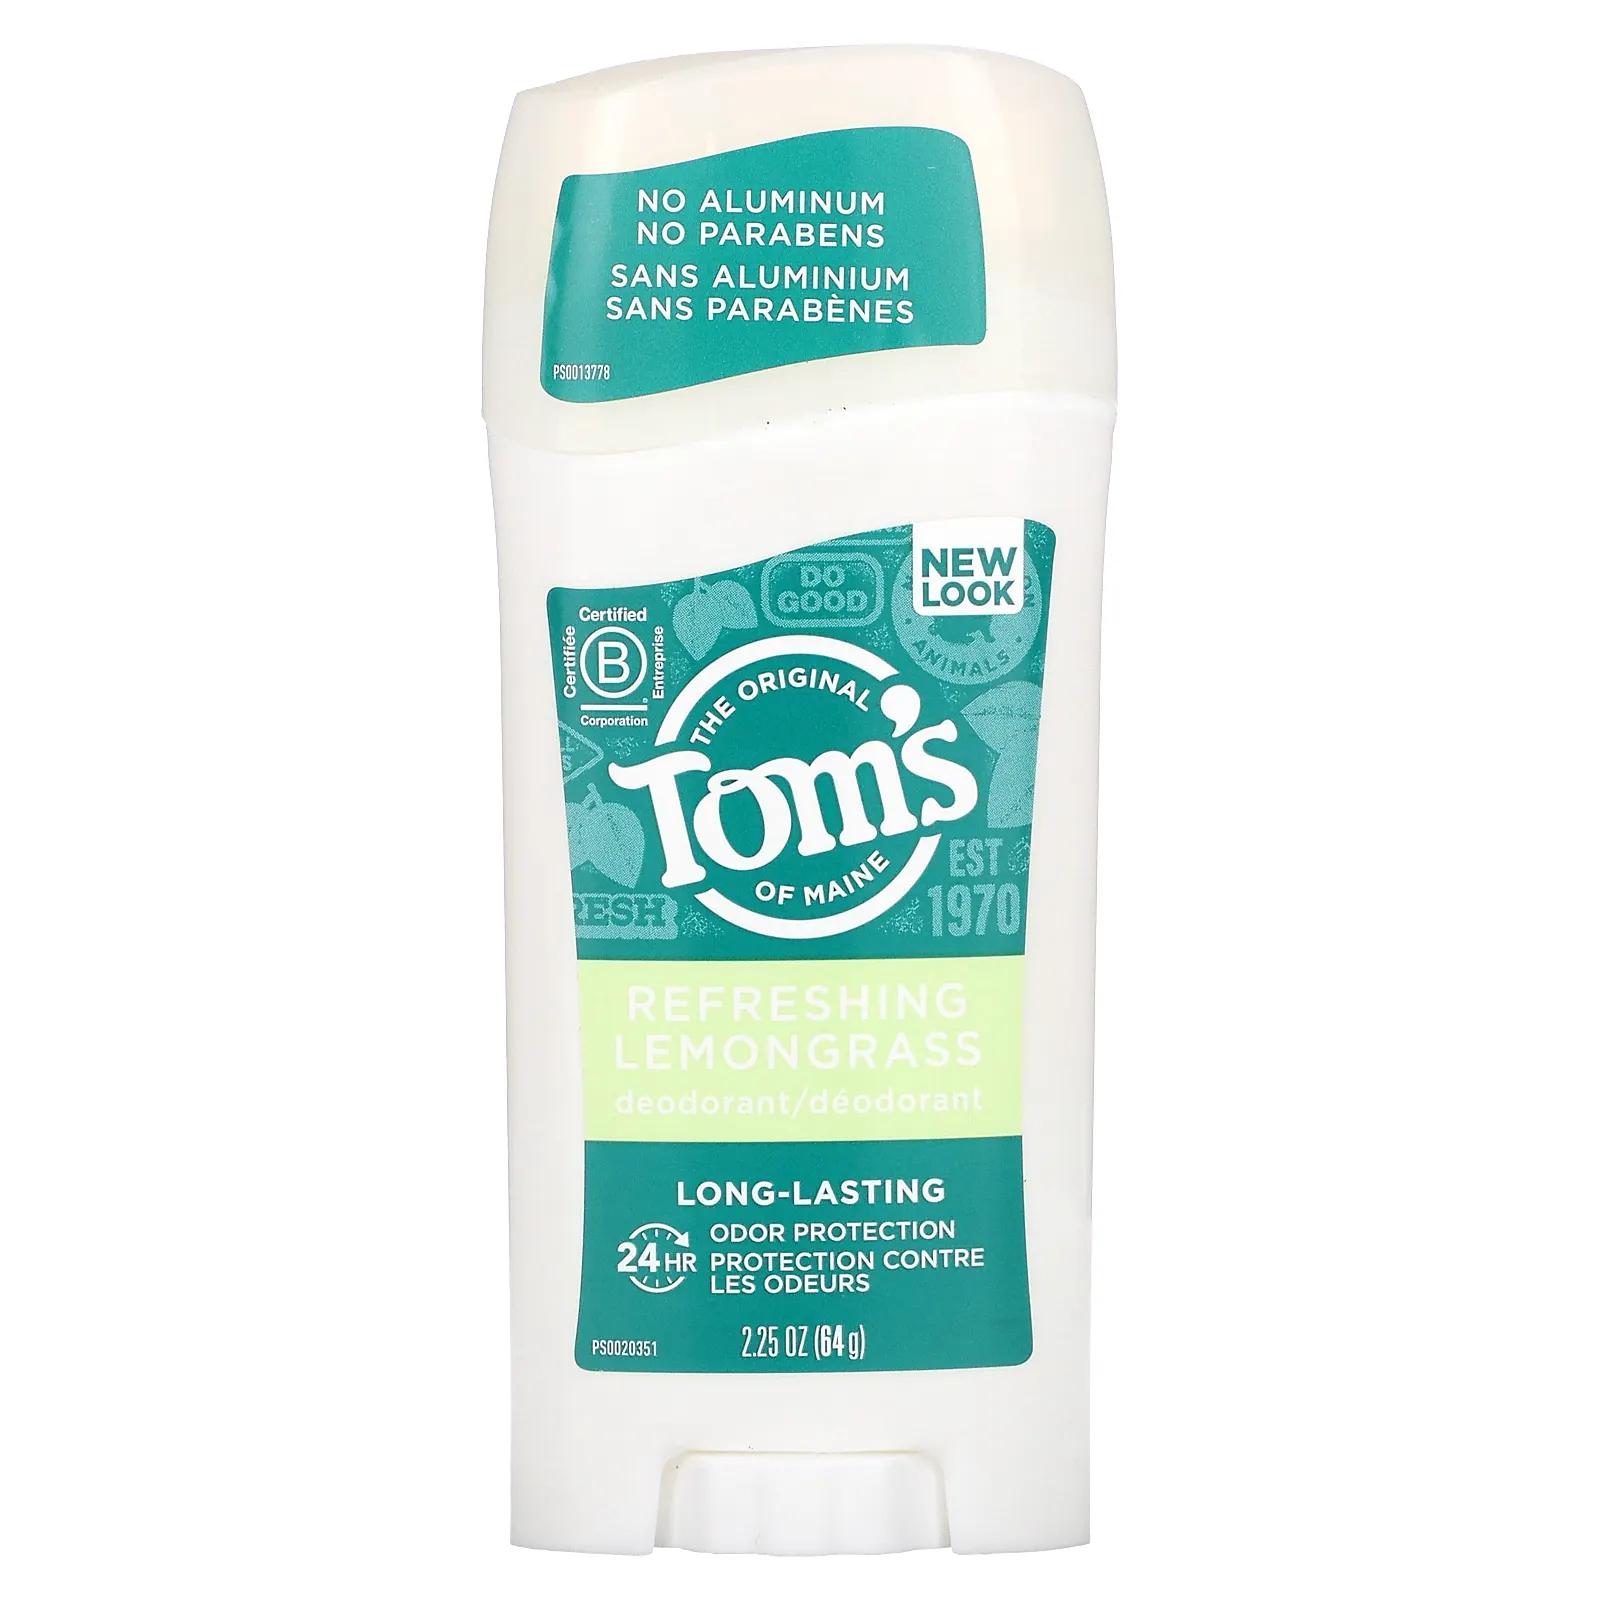 Tom's of Maine Дезодорант длительного действия с освежающим лемонграссом 2,25 унции (64 г) tom s of maine дезодорант длительного действия свежий абрикос 64 г 2 25 унции